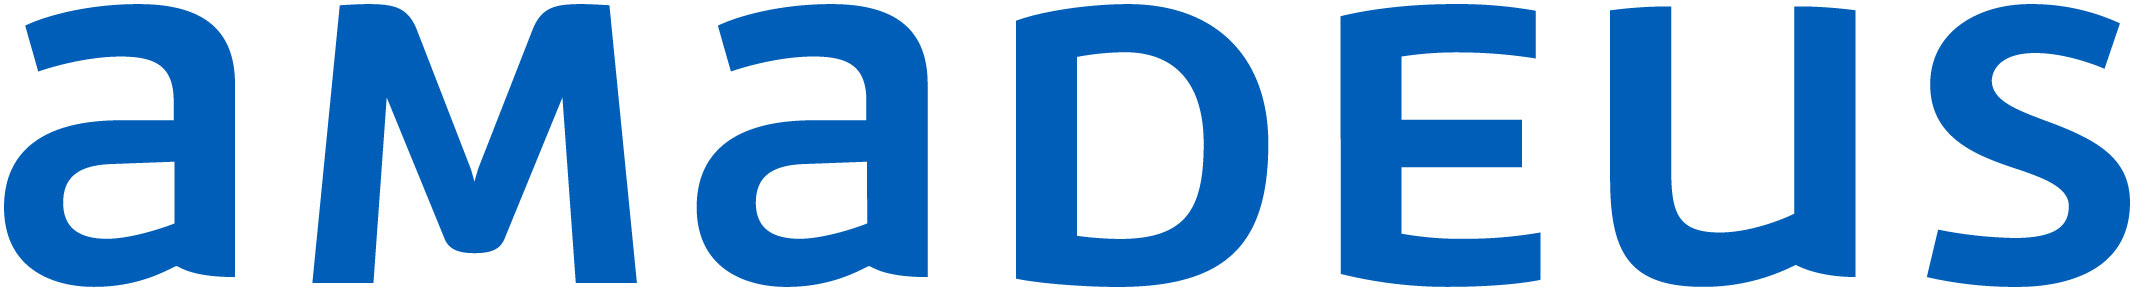 AMADEUS Brand logo site